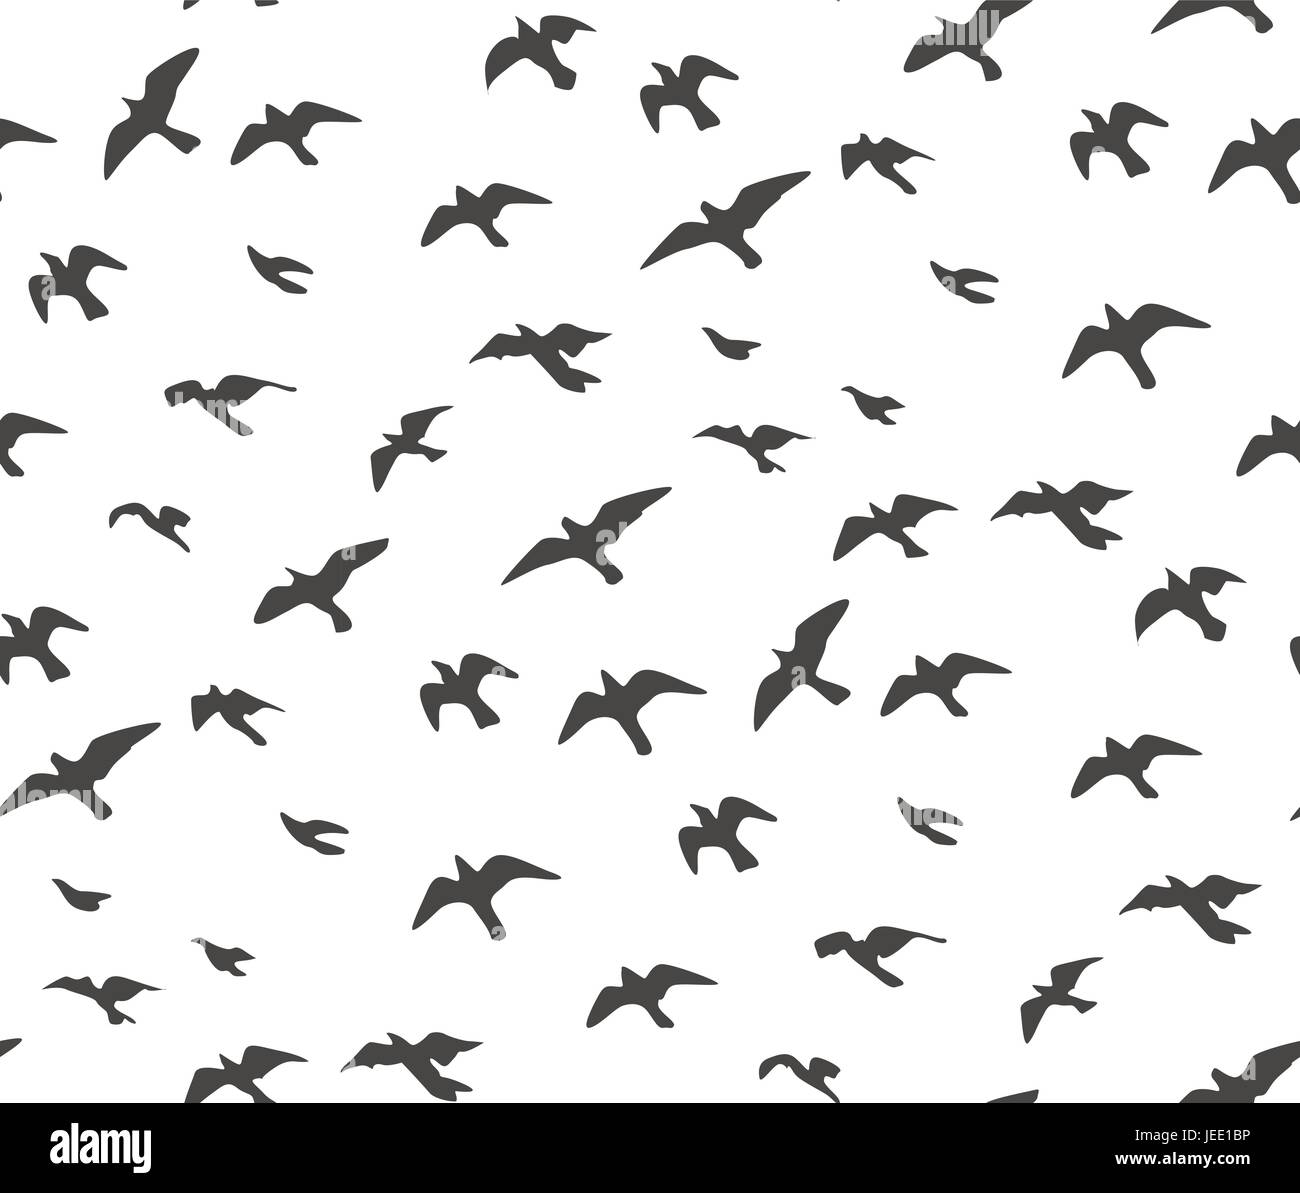 Ein Schwarm fliegender Vögel grau Silhouette. Taube, Möwe Skizze Satz, abstrakte Vogel Vektor schöne Musterdesign, Verpackung Papier niedlichen Design, Stoff Stock Vektor